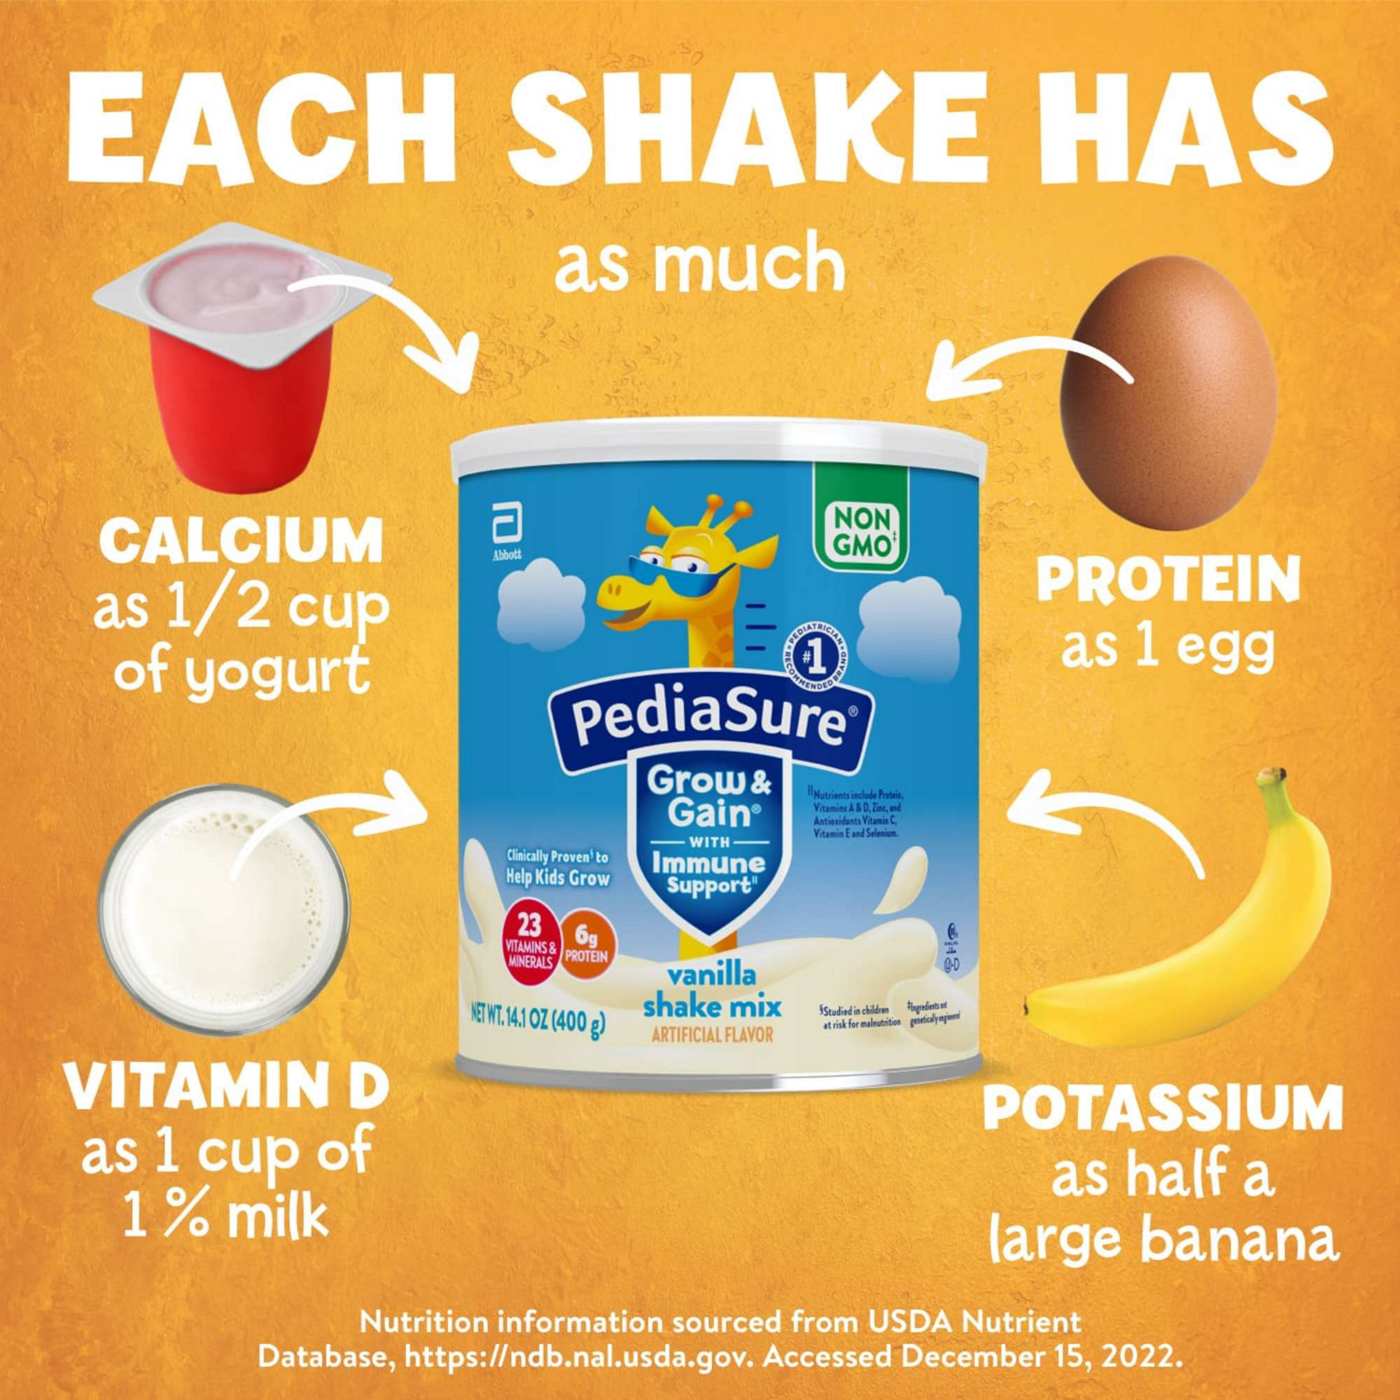 PediaSure Grow & Gain with Immune Support Shake Mix - Vanilla; image 3 of 11